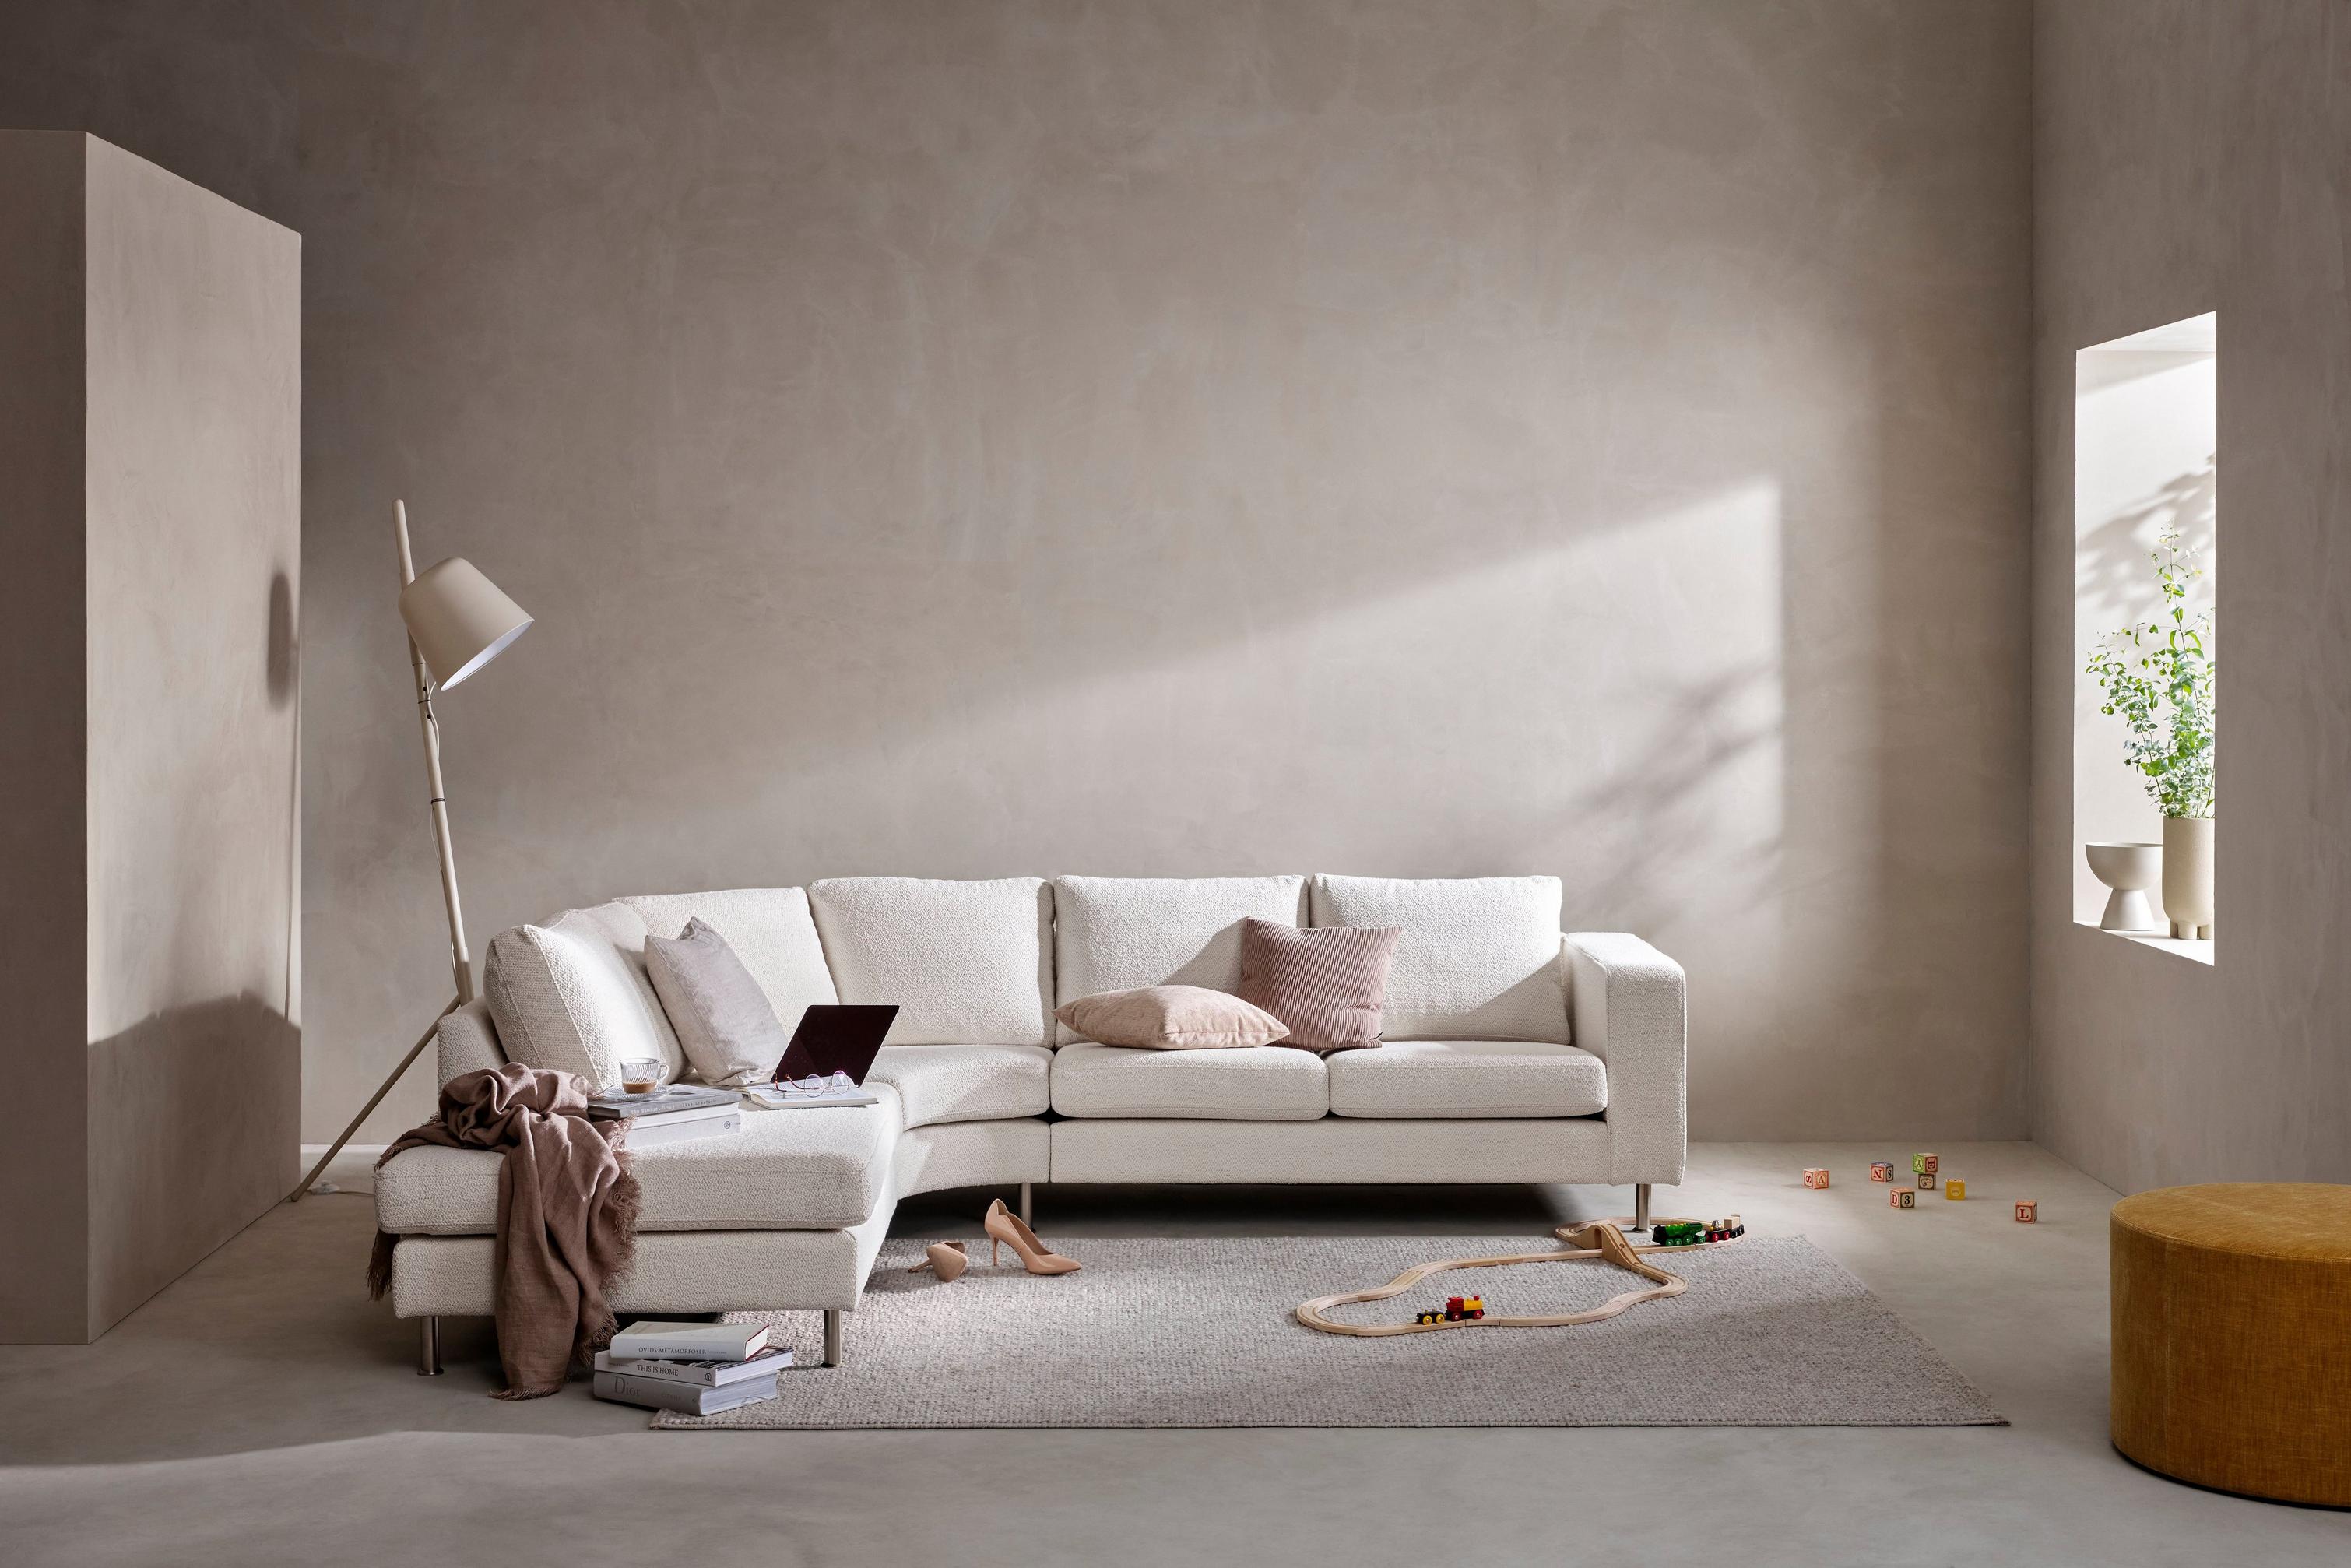 Indivi sofa placeret i lille rum præget af grå toner